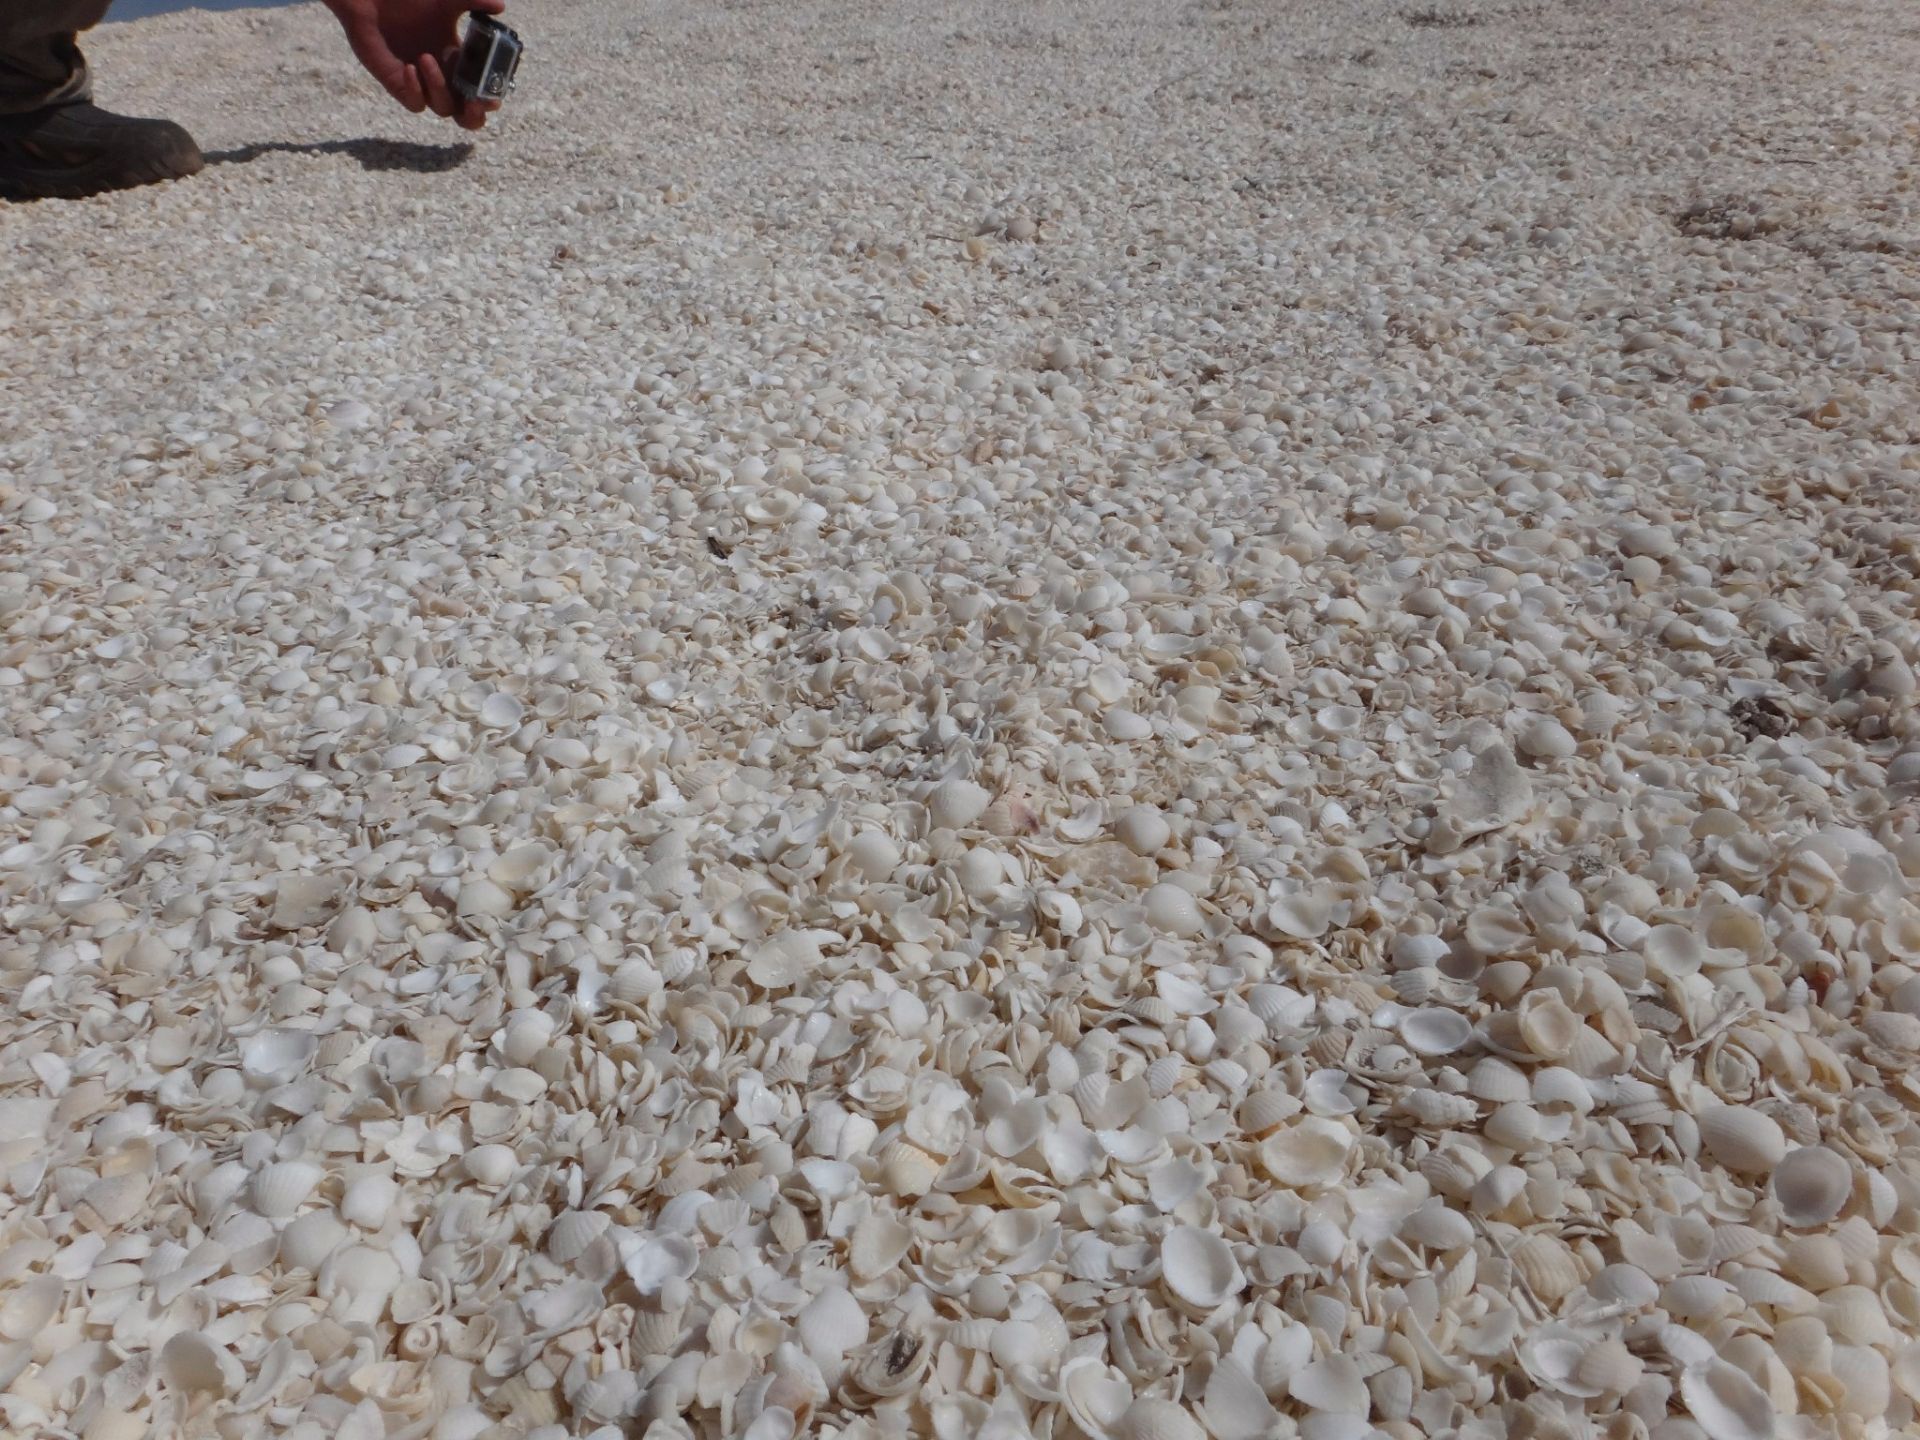 贝壳沙滩真的是名副其实，整个沙滩上都是被海水冲刷上来的贝壳。把整个海滩全部都覆盖了。在这里不能光脚走